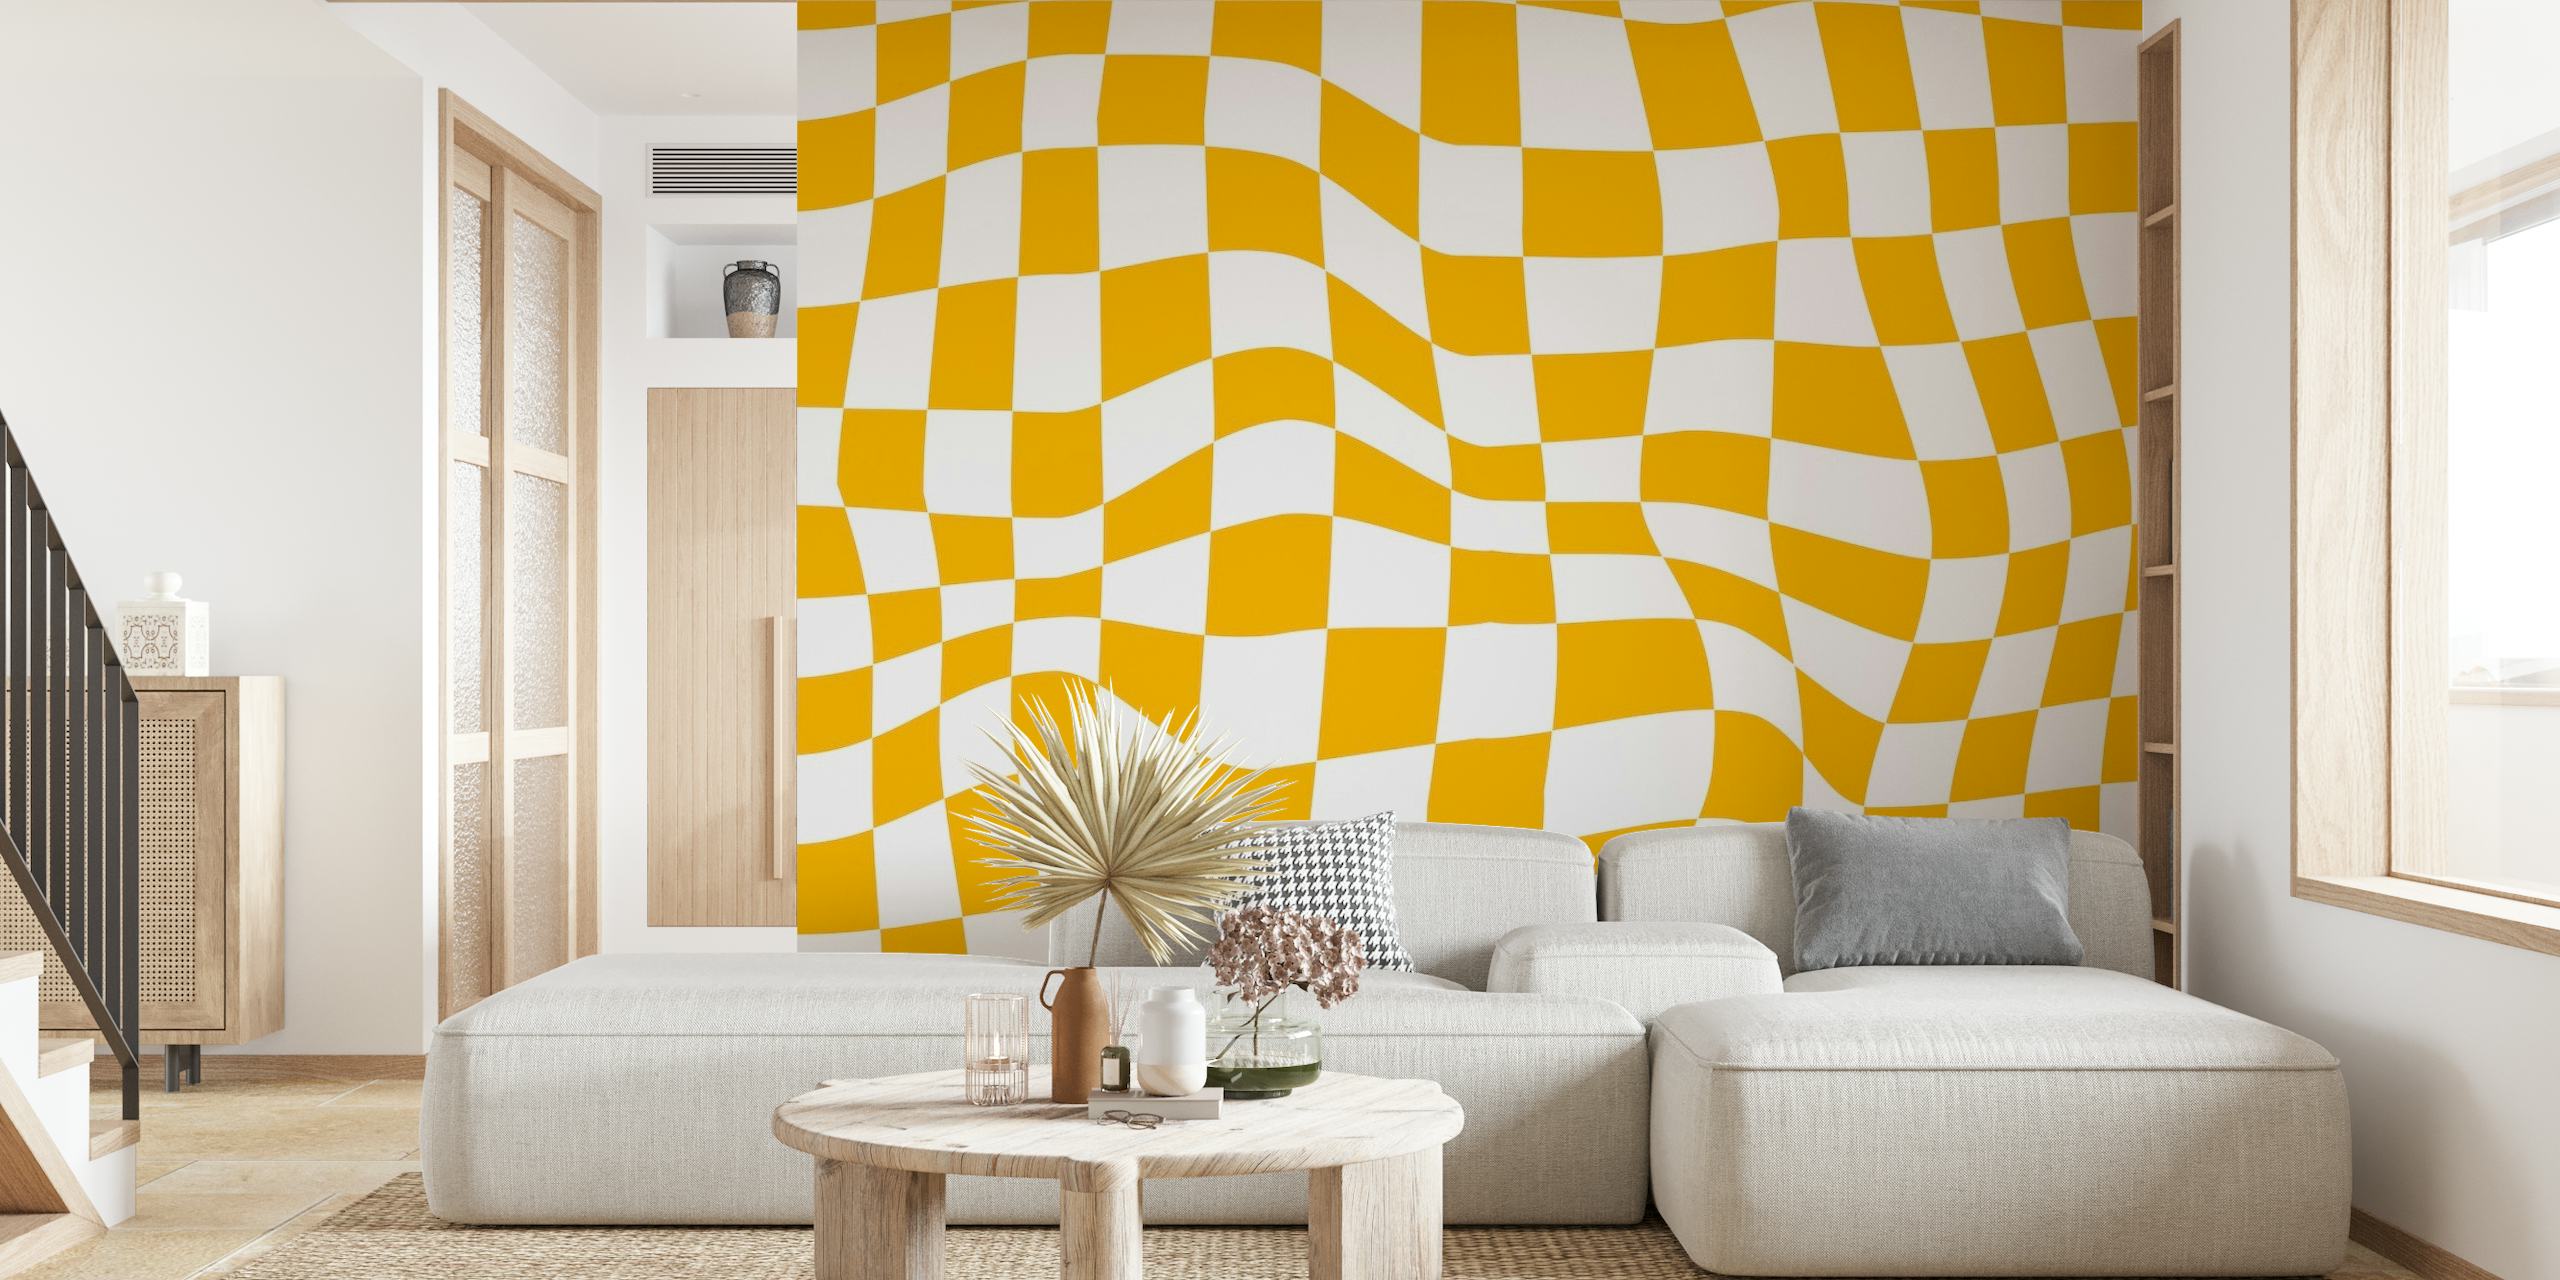 Mural de pared con estampado de cuadros retro en amarillo y blanco que evoca vibraciones de estilo de los años 60 y 70